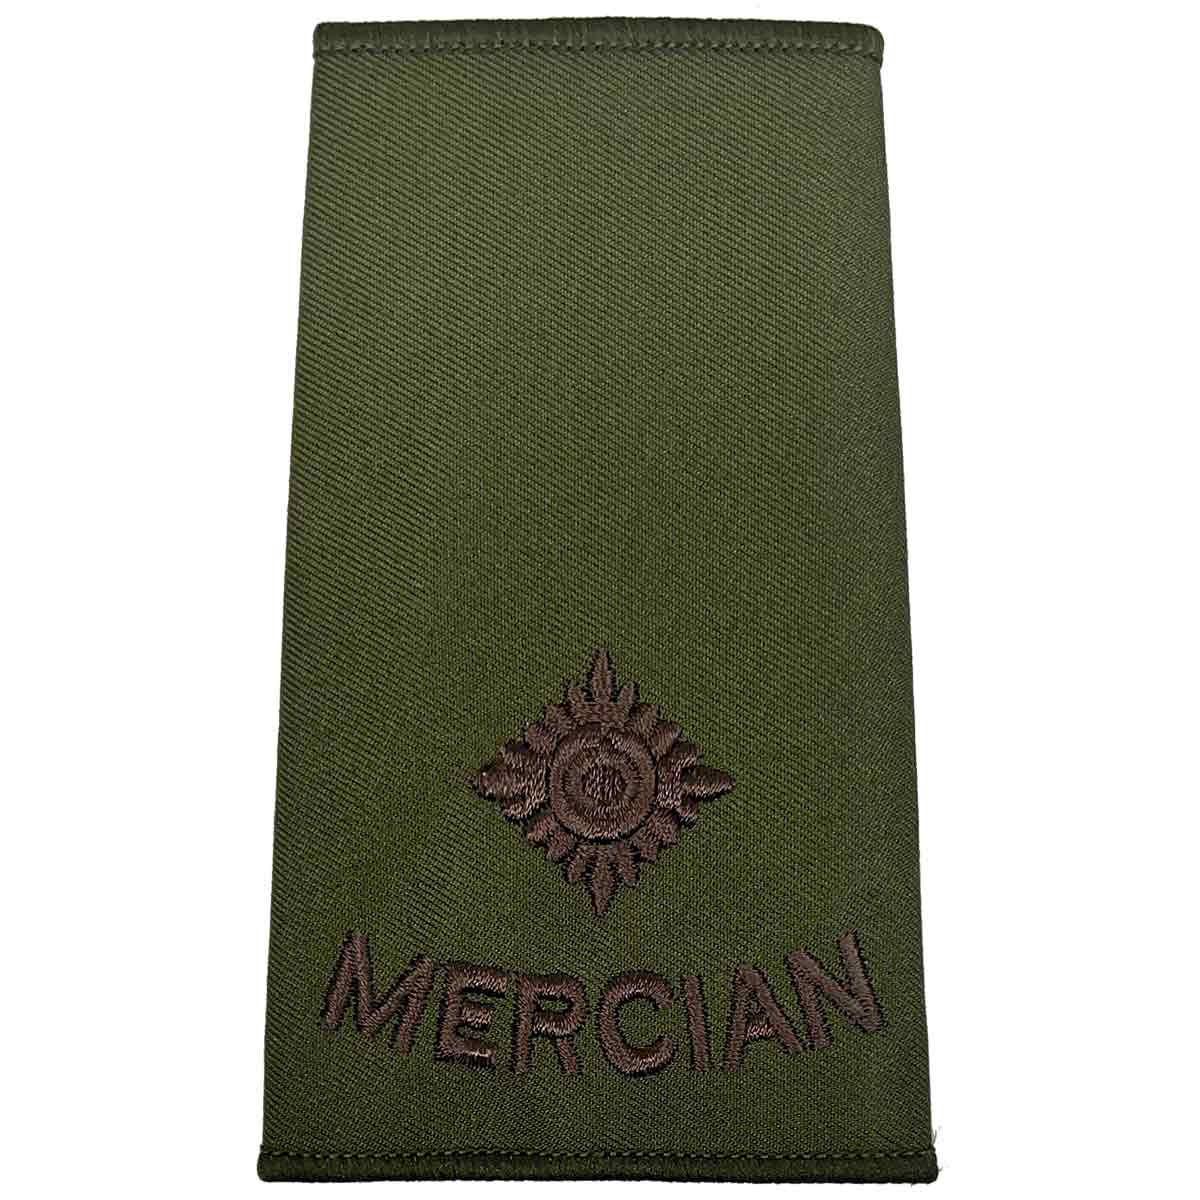 Mercian Regiment Olive Green Rank Slides (Pair) - John Bull Clothing